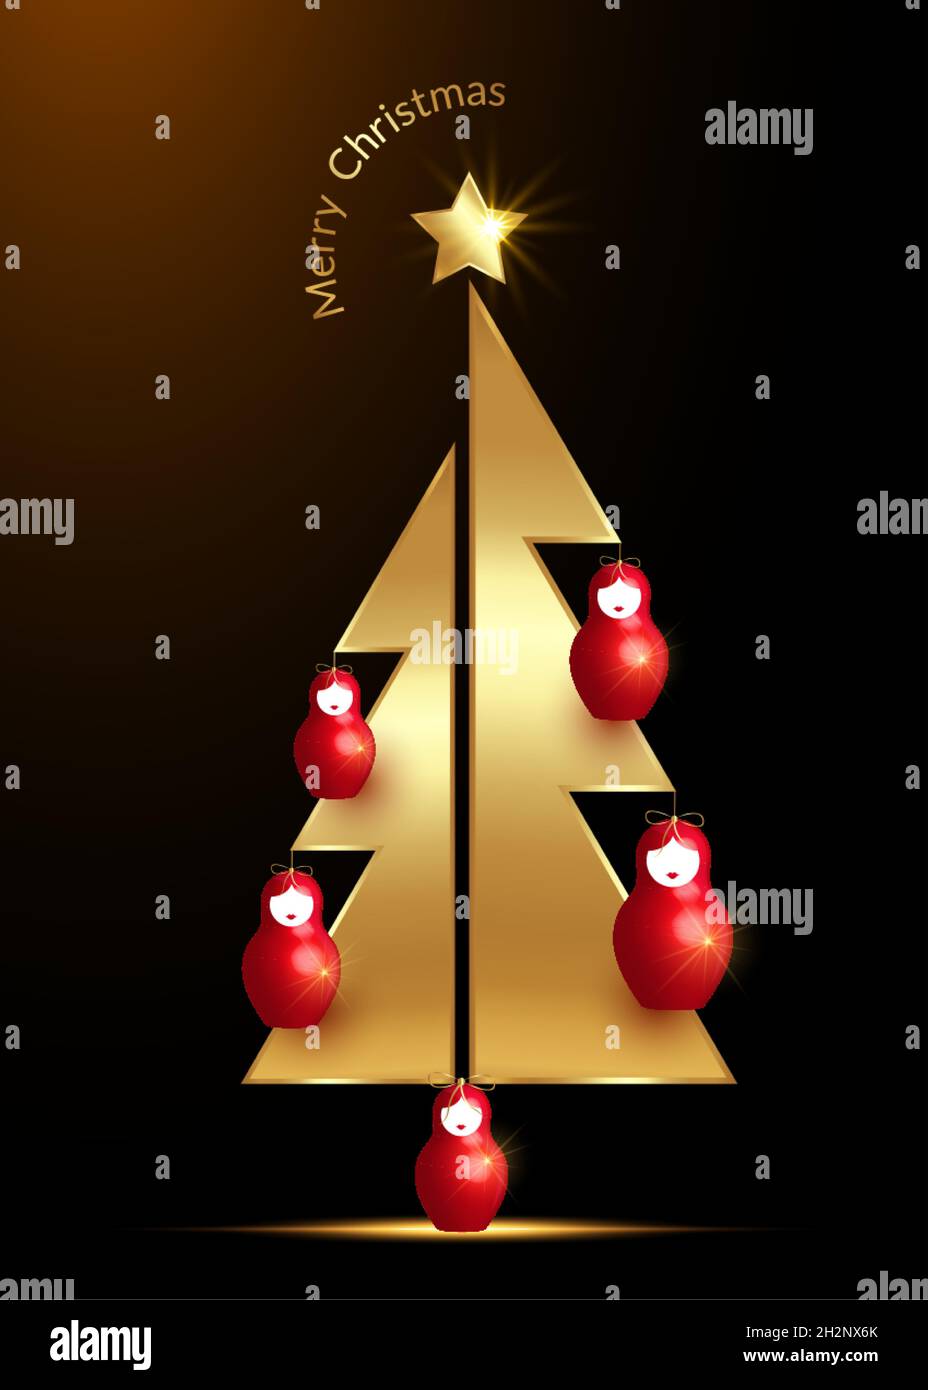 Arbre de Noël doré et étoile avec poupée russe rouge Matrioshka  ornements.Symbole de bonne année, fête de Noël.Décoration lumineuse dorée  Image Vectorielle Stock - Alamy